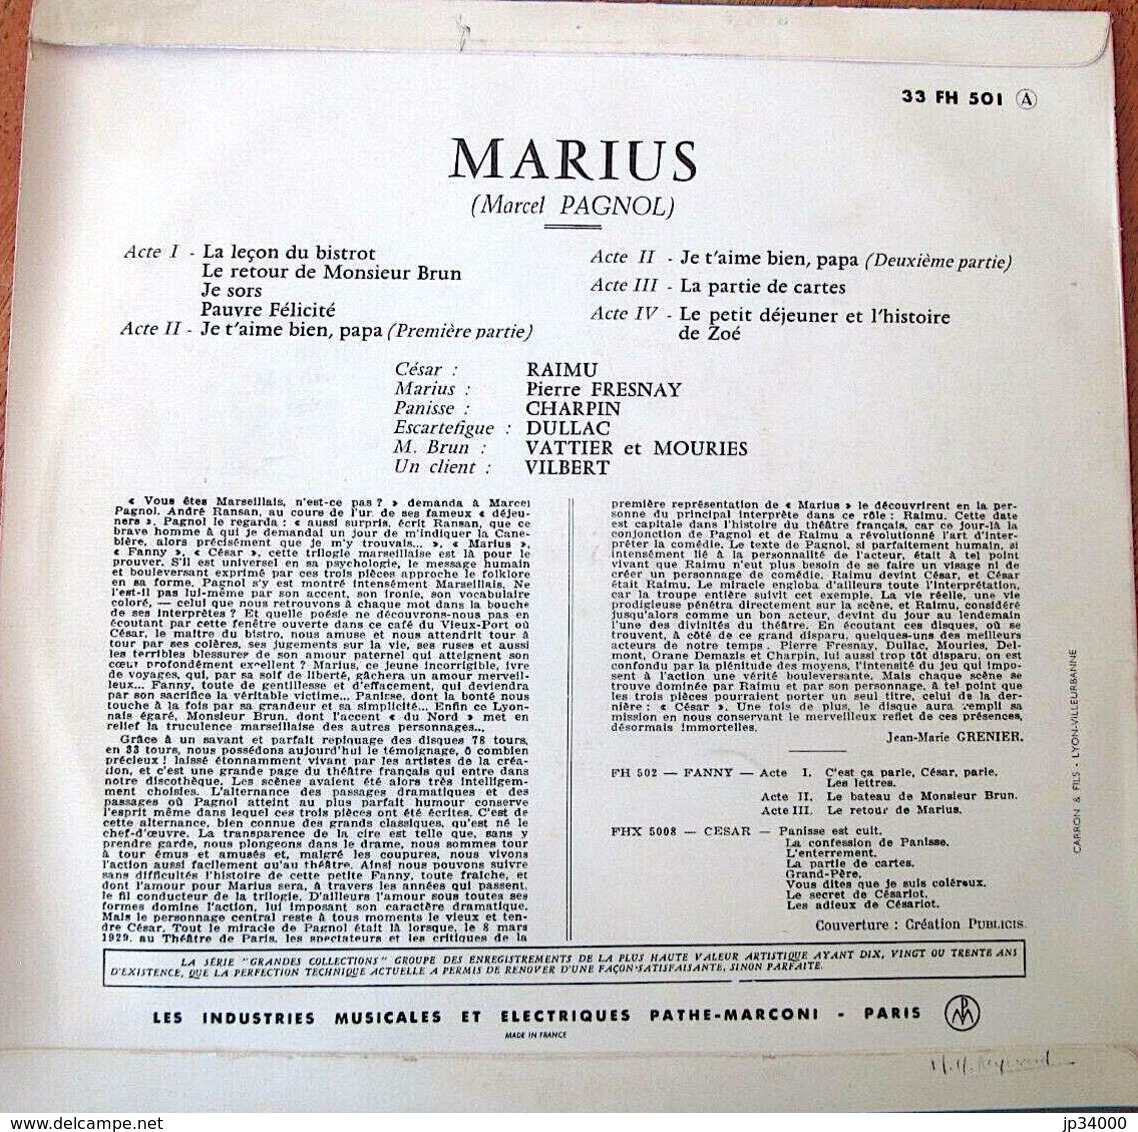 VINYL 33t 25 Cm : Marius De Marcel Pagnol, Raimu, Pierre Fresnay, Charpin. Columbia 33 FH 501 - Formats Spéciaux